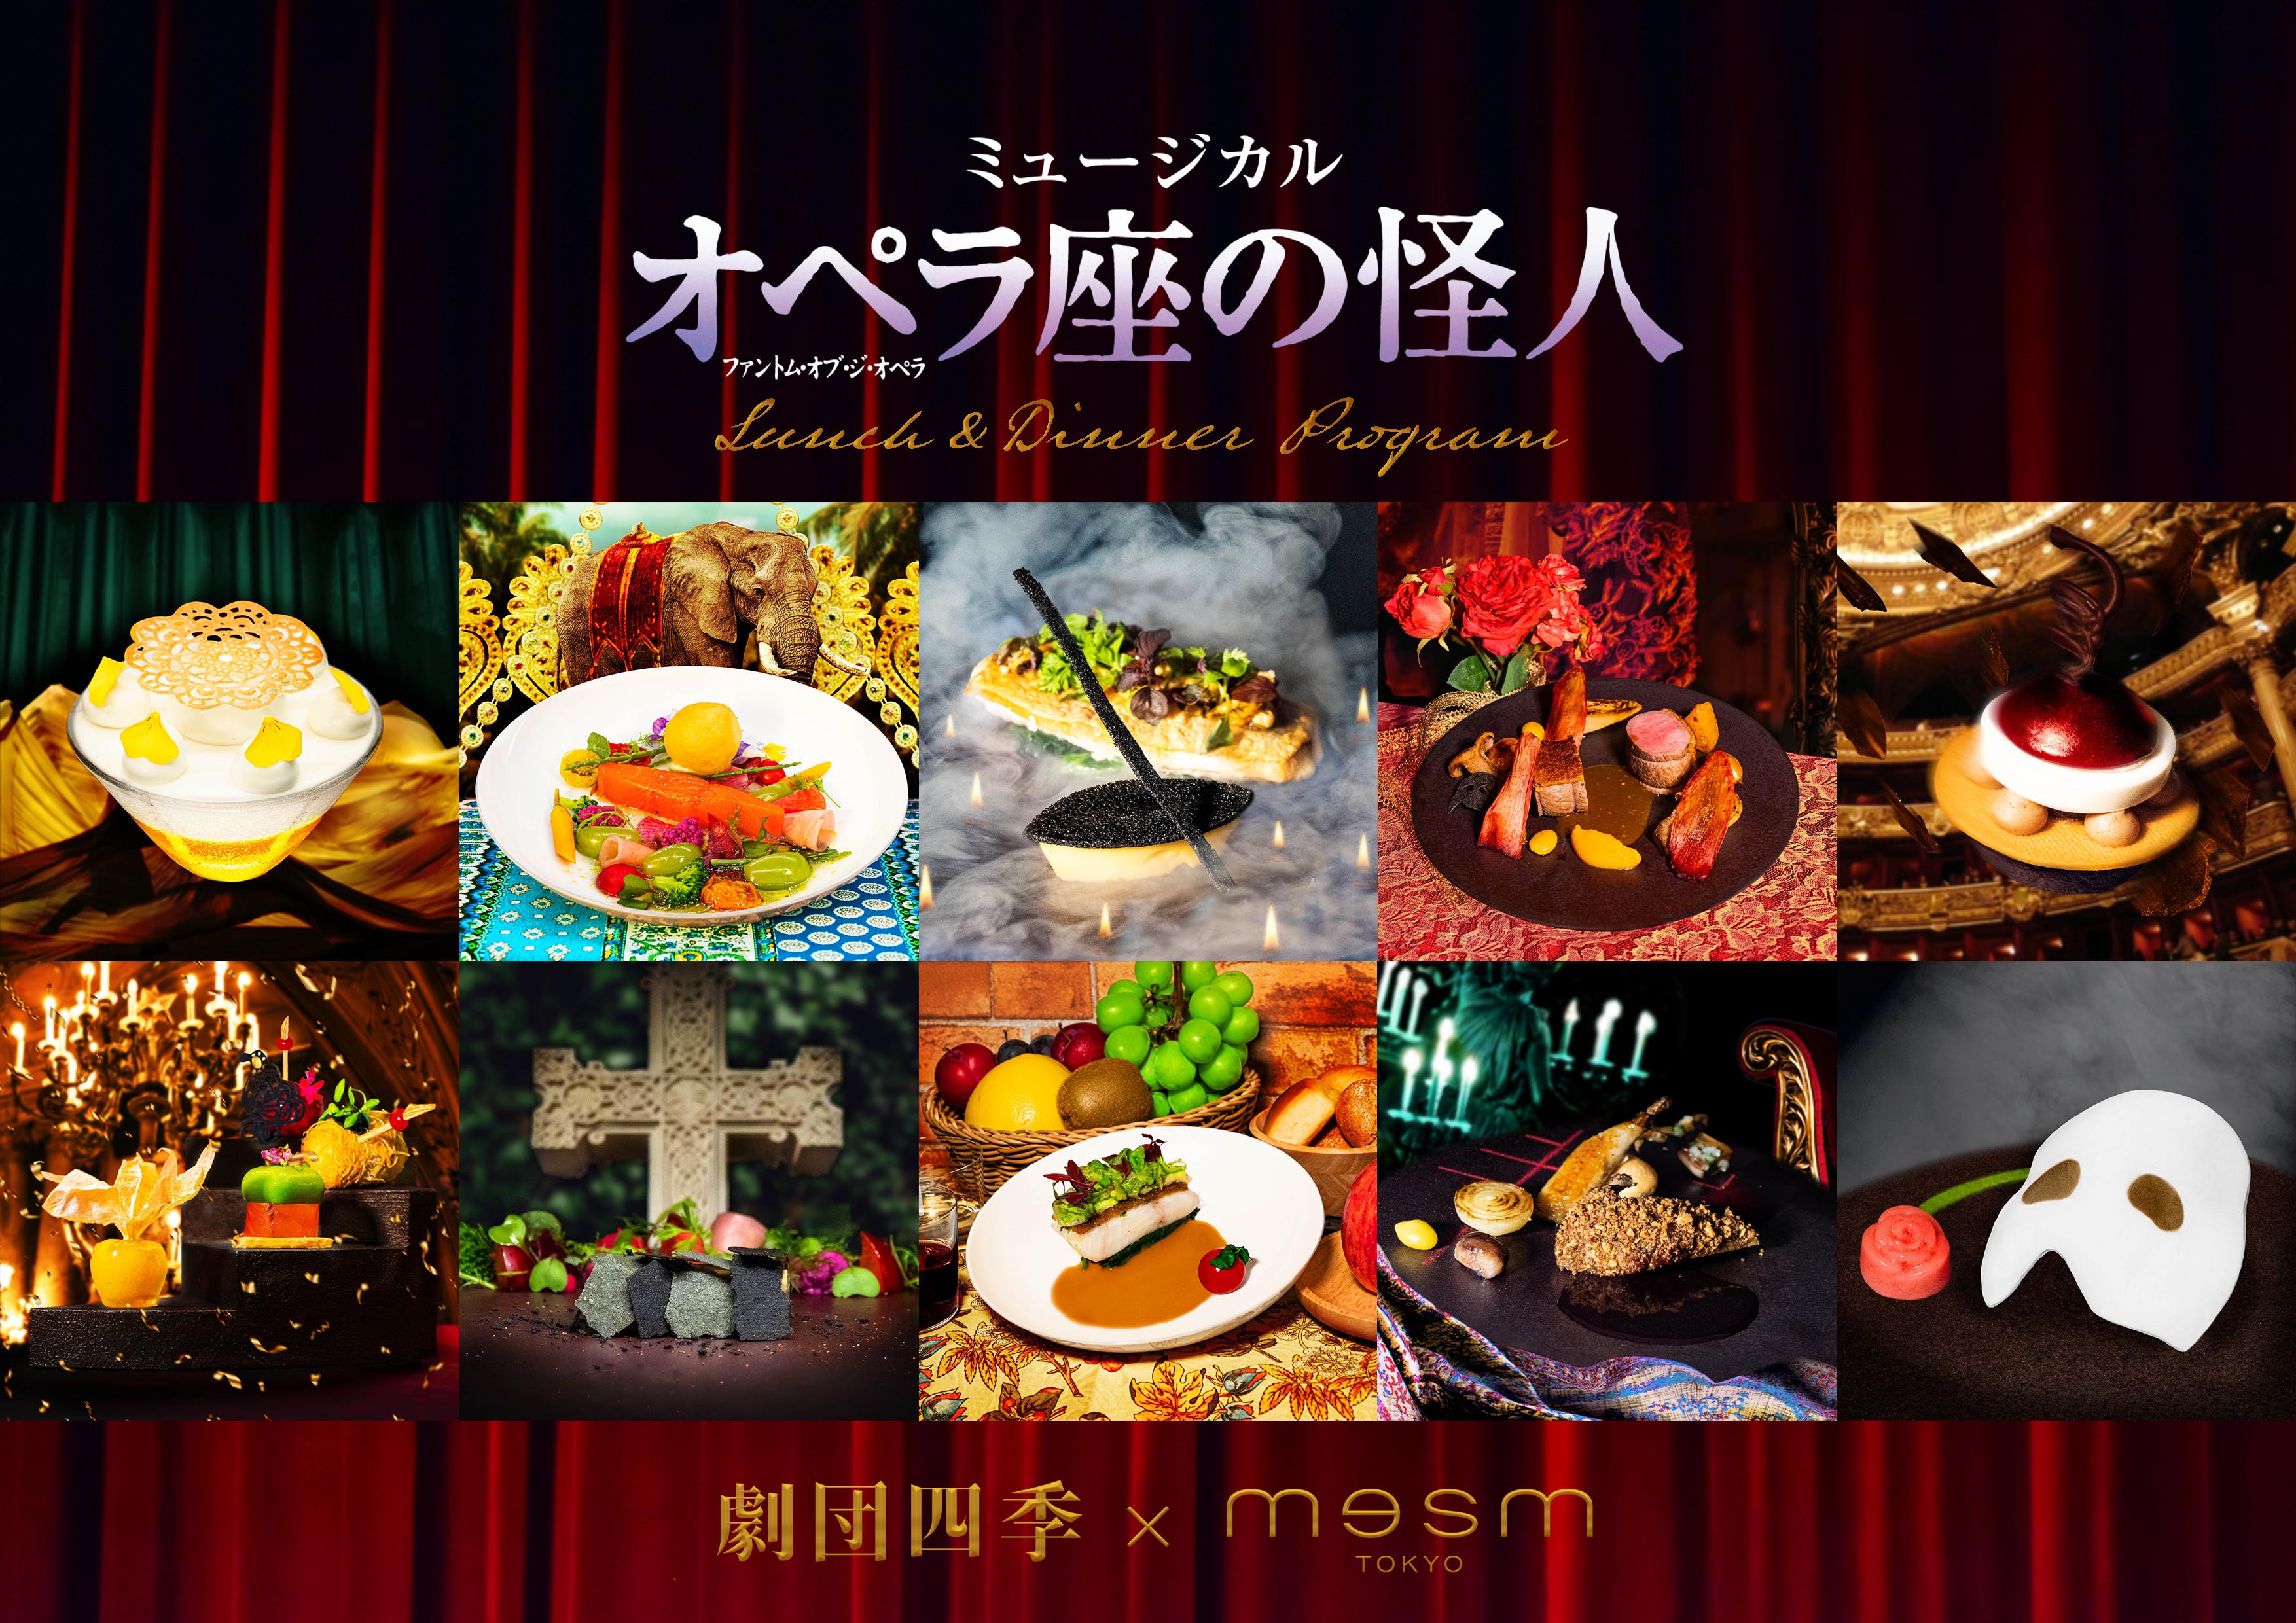 メズム東京 劇団四季 オペラ座の怪人 ランチ ディナープログラムを販売開始 Jr東日本ホテルズのプレスリリース